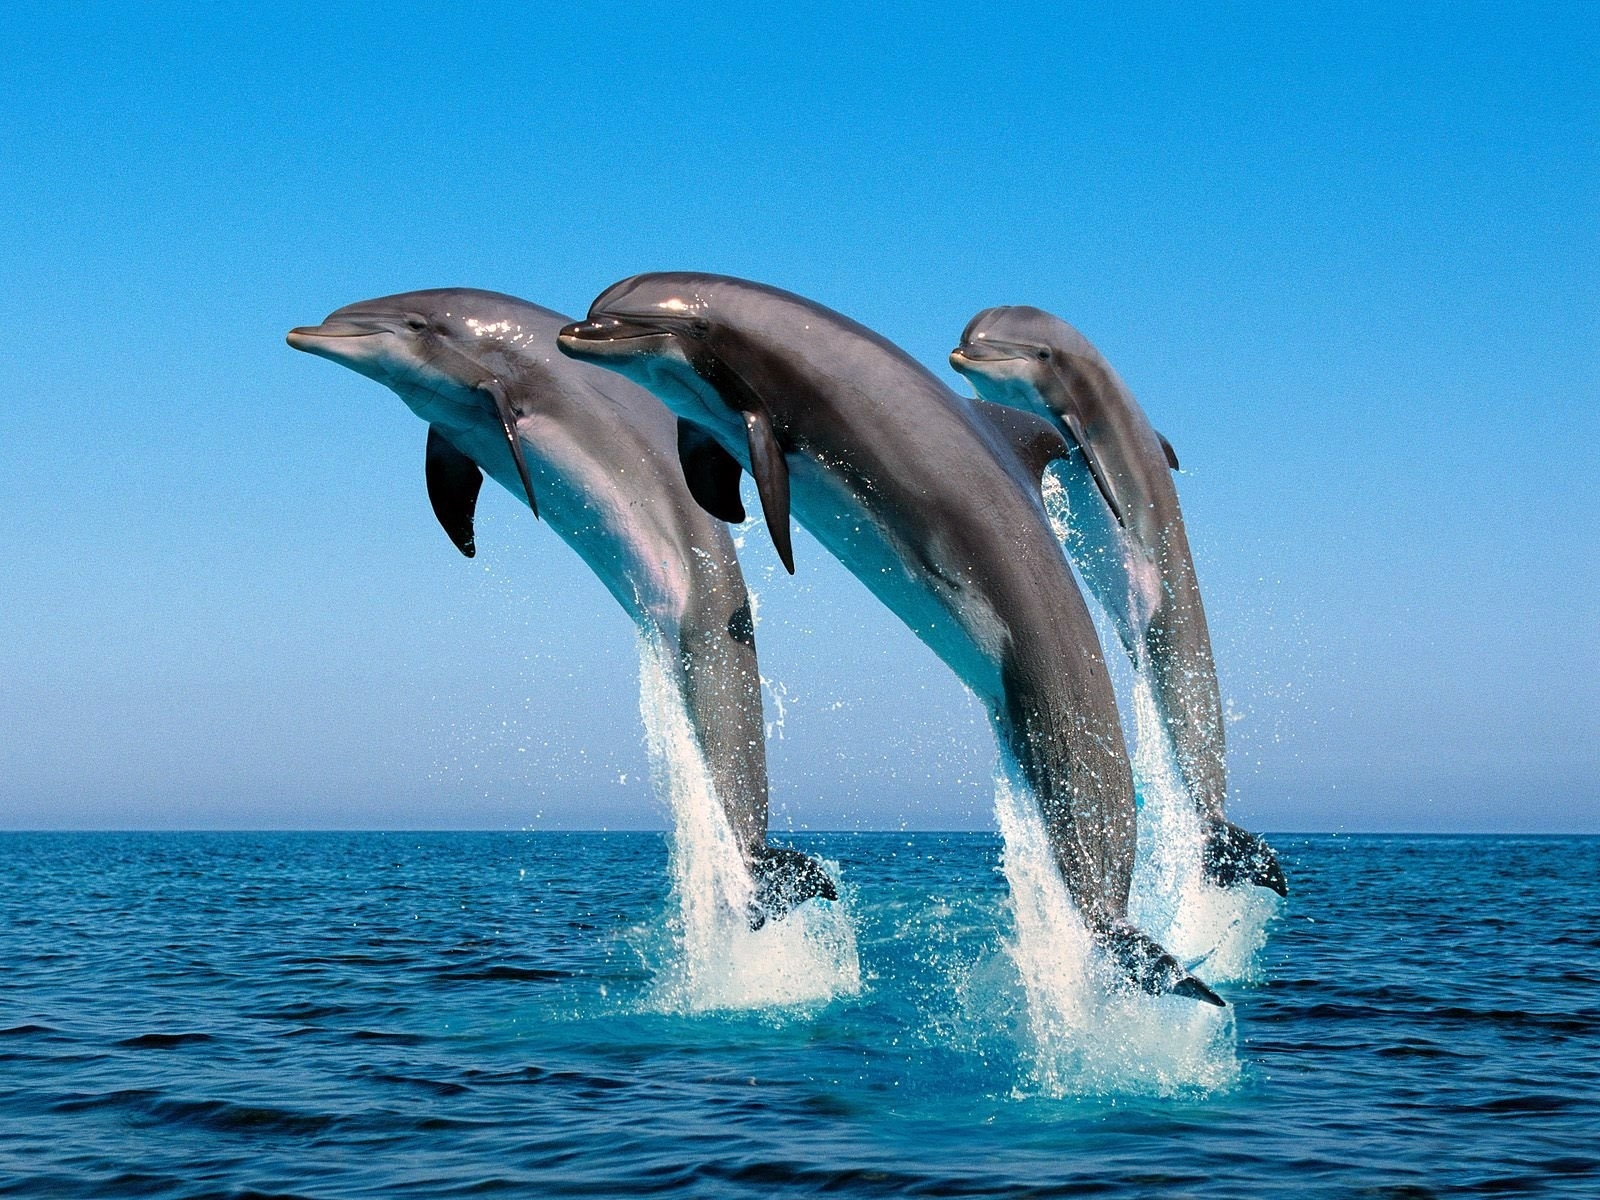 Скачать обои Дельфины на телефон бесплатно